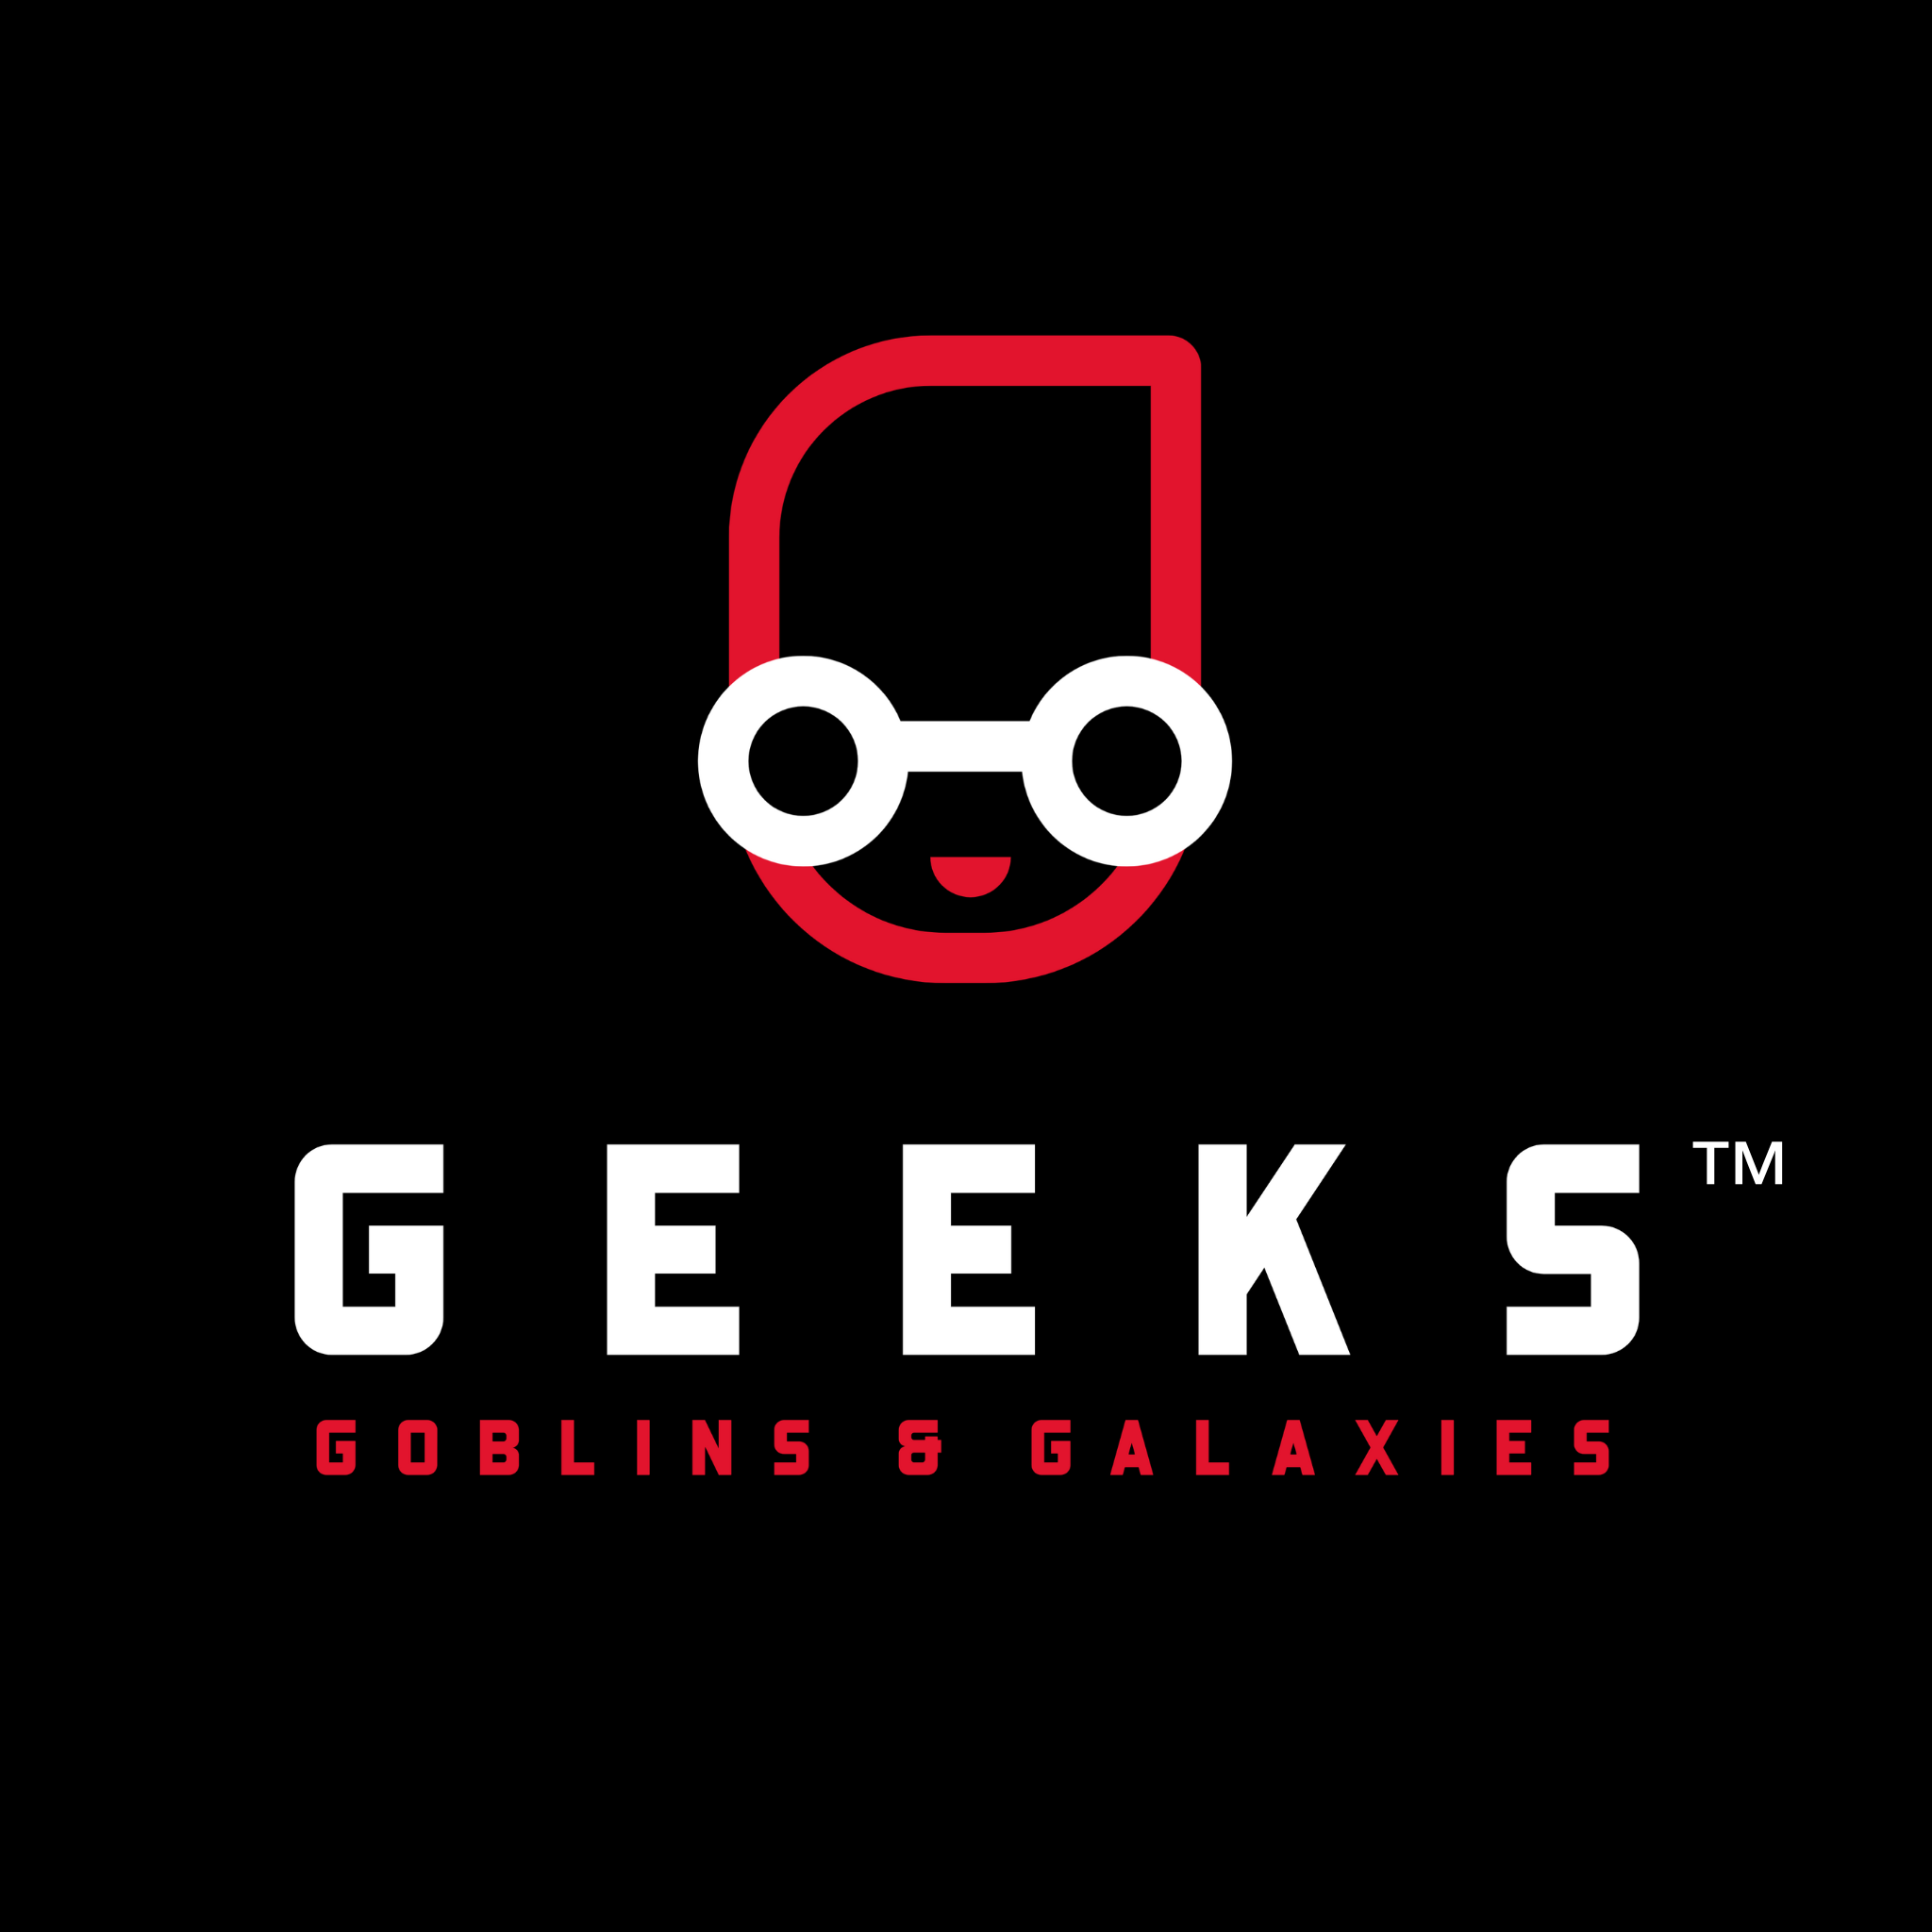 Geeks, Goblins, and Galaxies